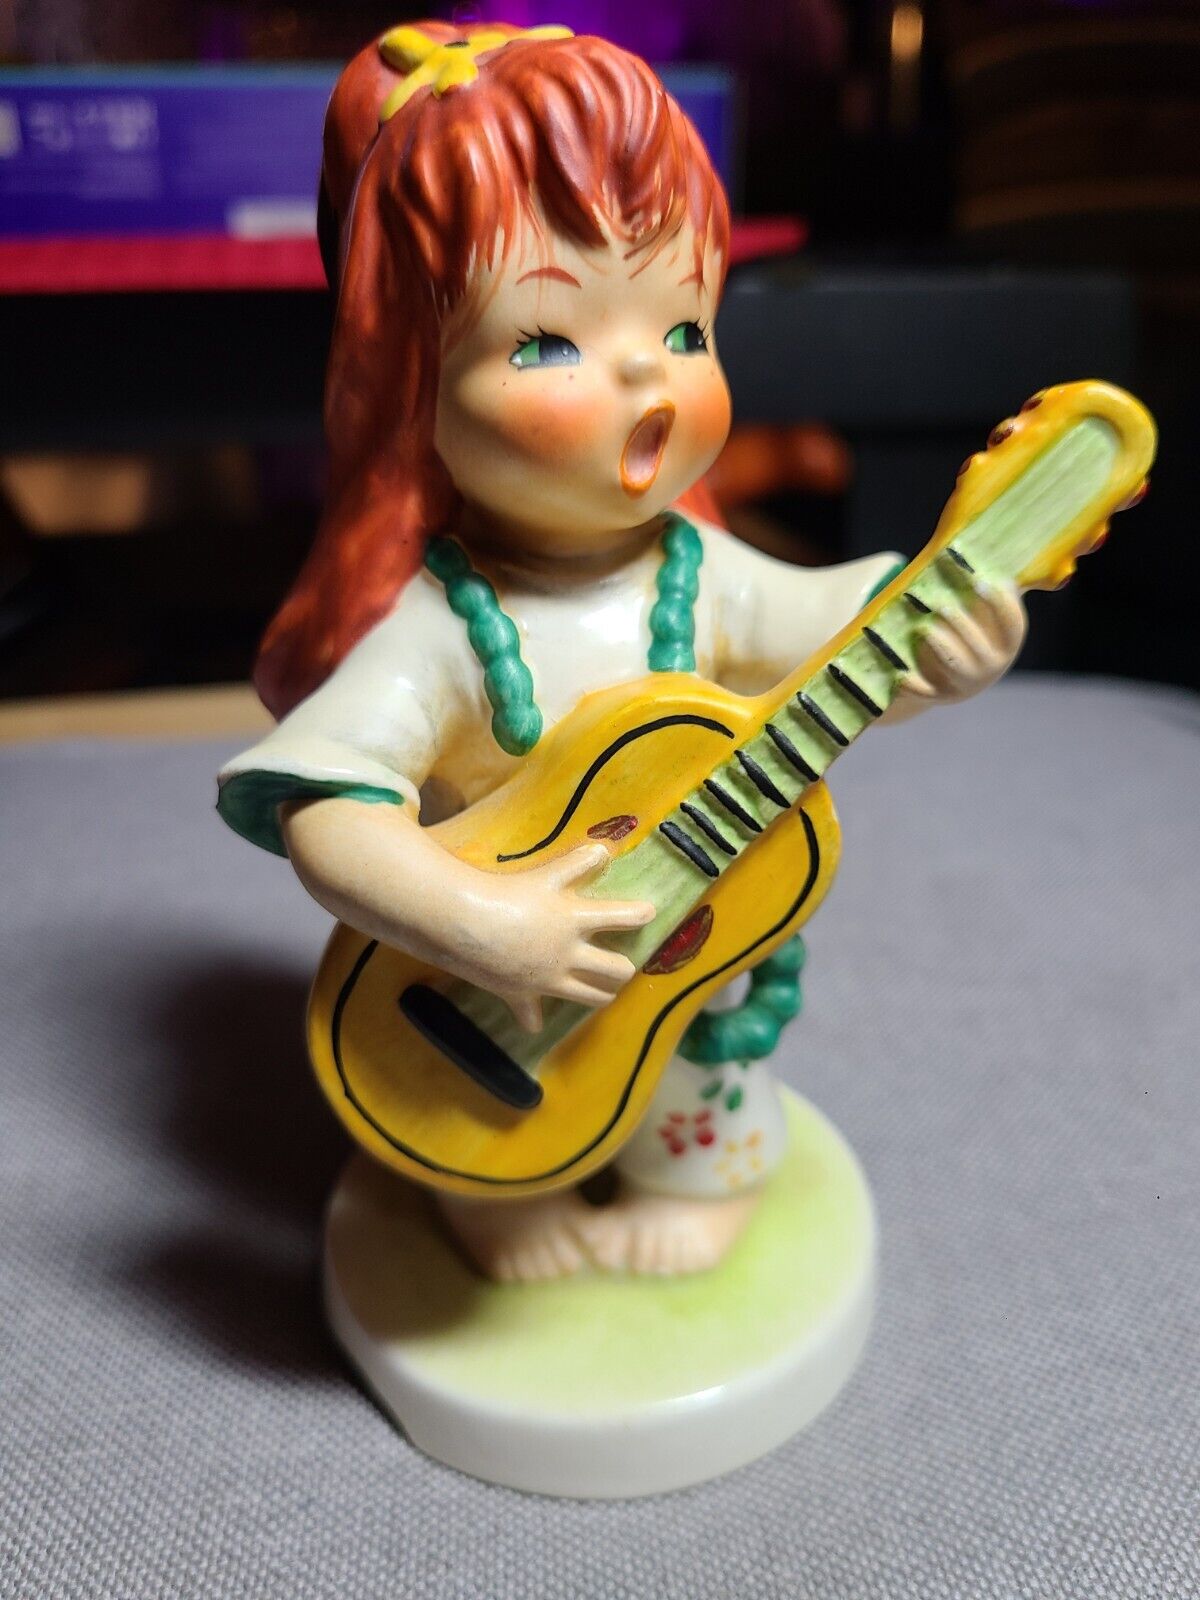 Vintage Goebel Redhead Figurine 